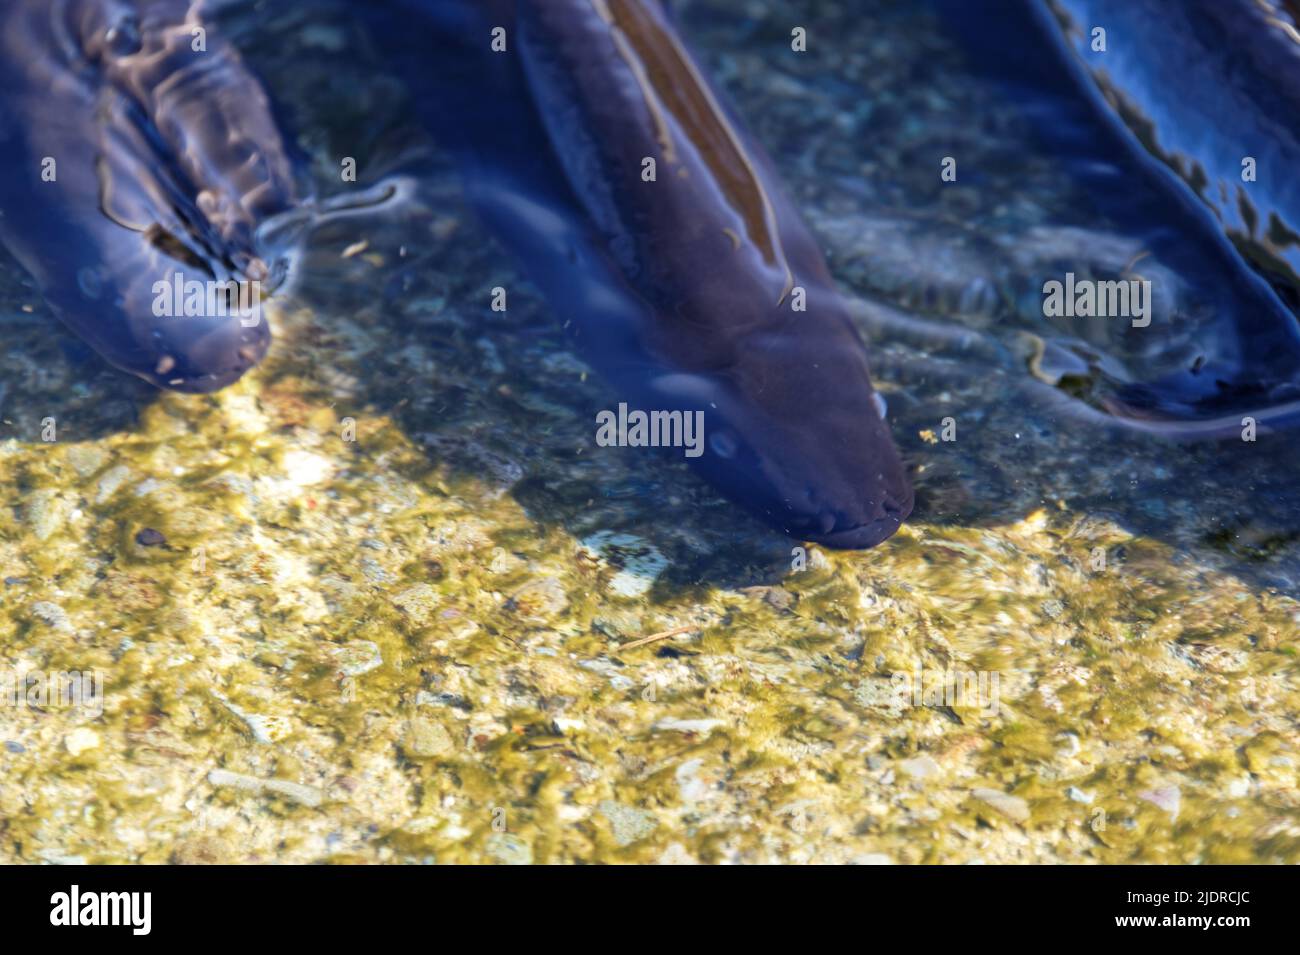 Las anguilas pescadoras viven en agua dulce, migran al mar para reproducirse. Foto de stock